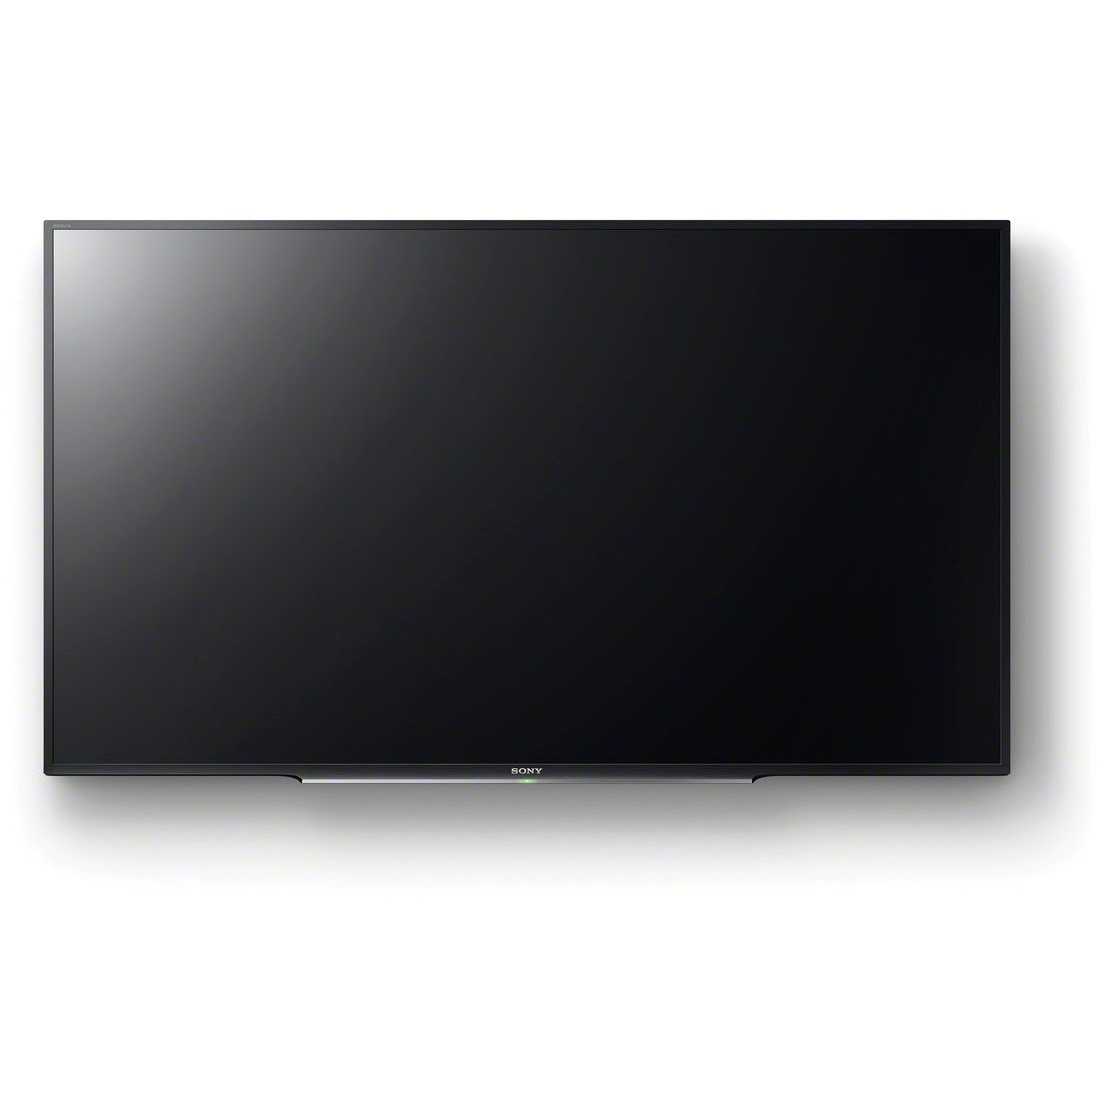 Sony kdl-50w829b купить по акционной цене , отзывы и обзоры.